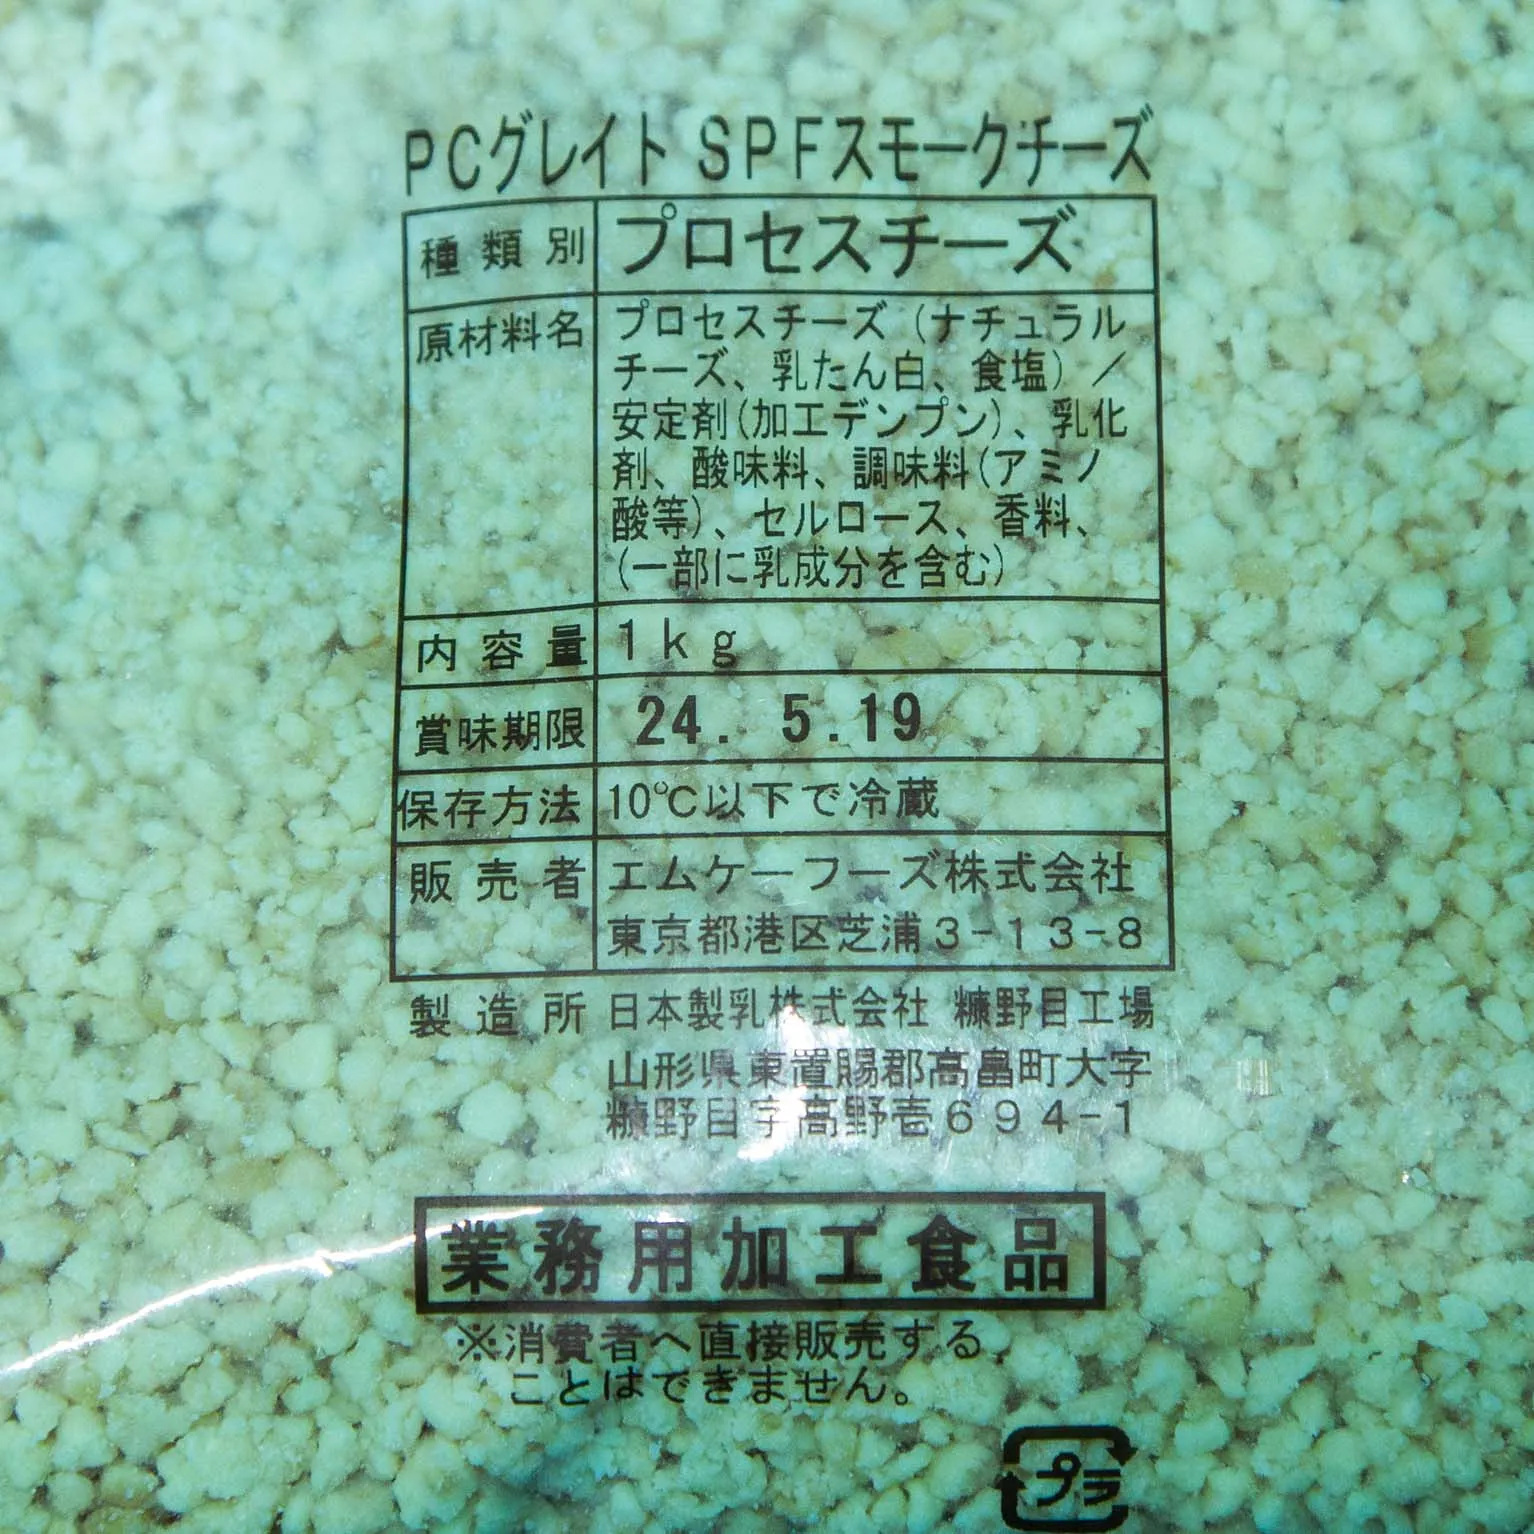 PCグレイト SPFスモークチーズ 1